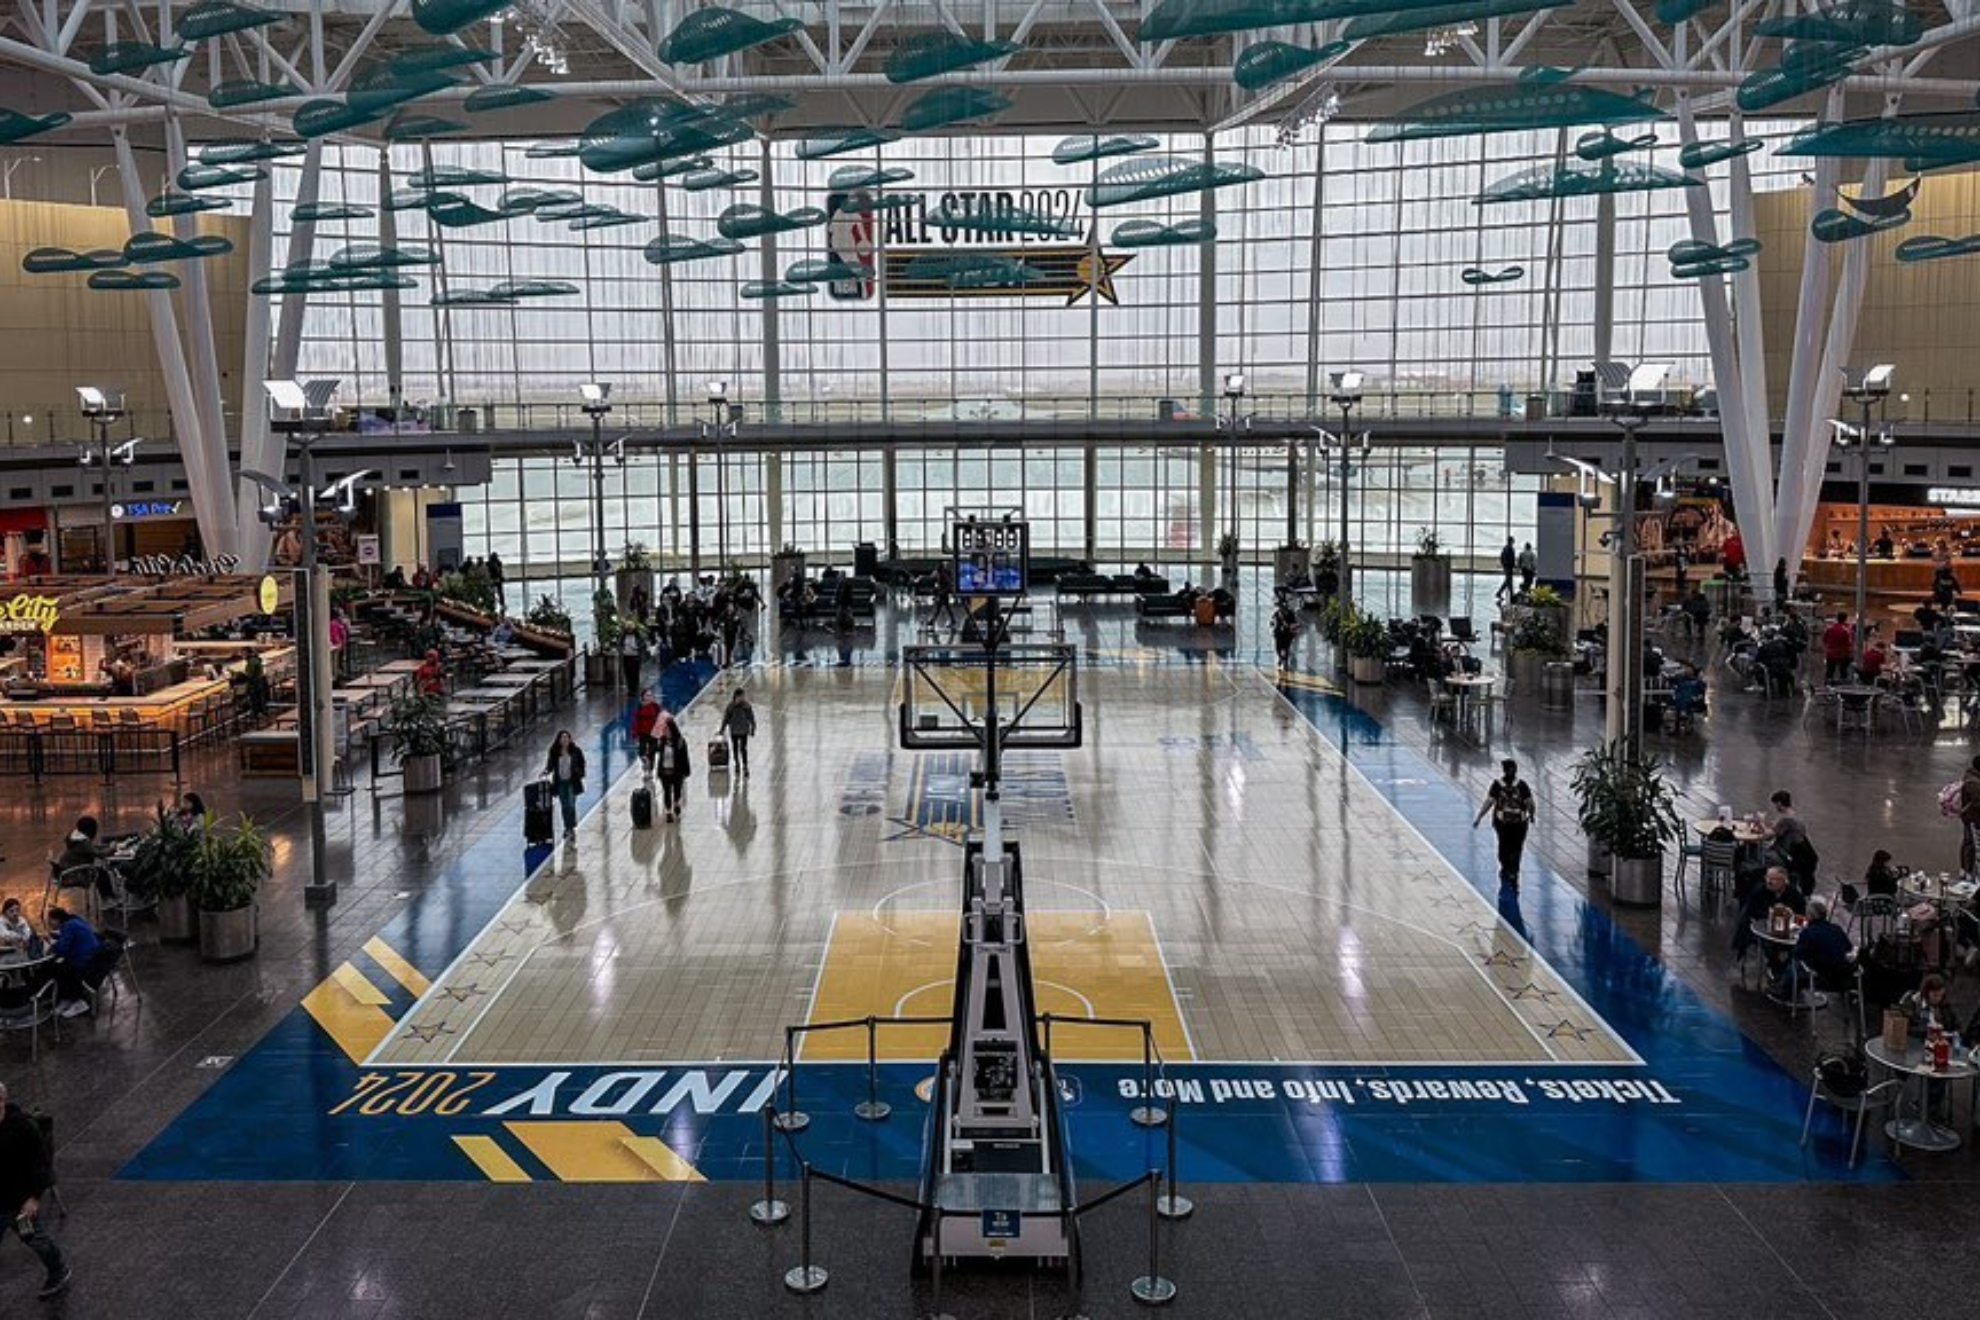 Lo nunca visto: una cancha de baloncesto... en un aeropuerto!